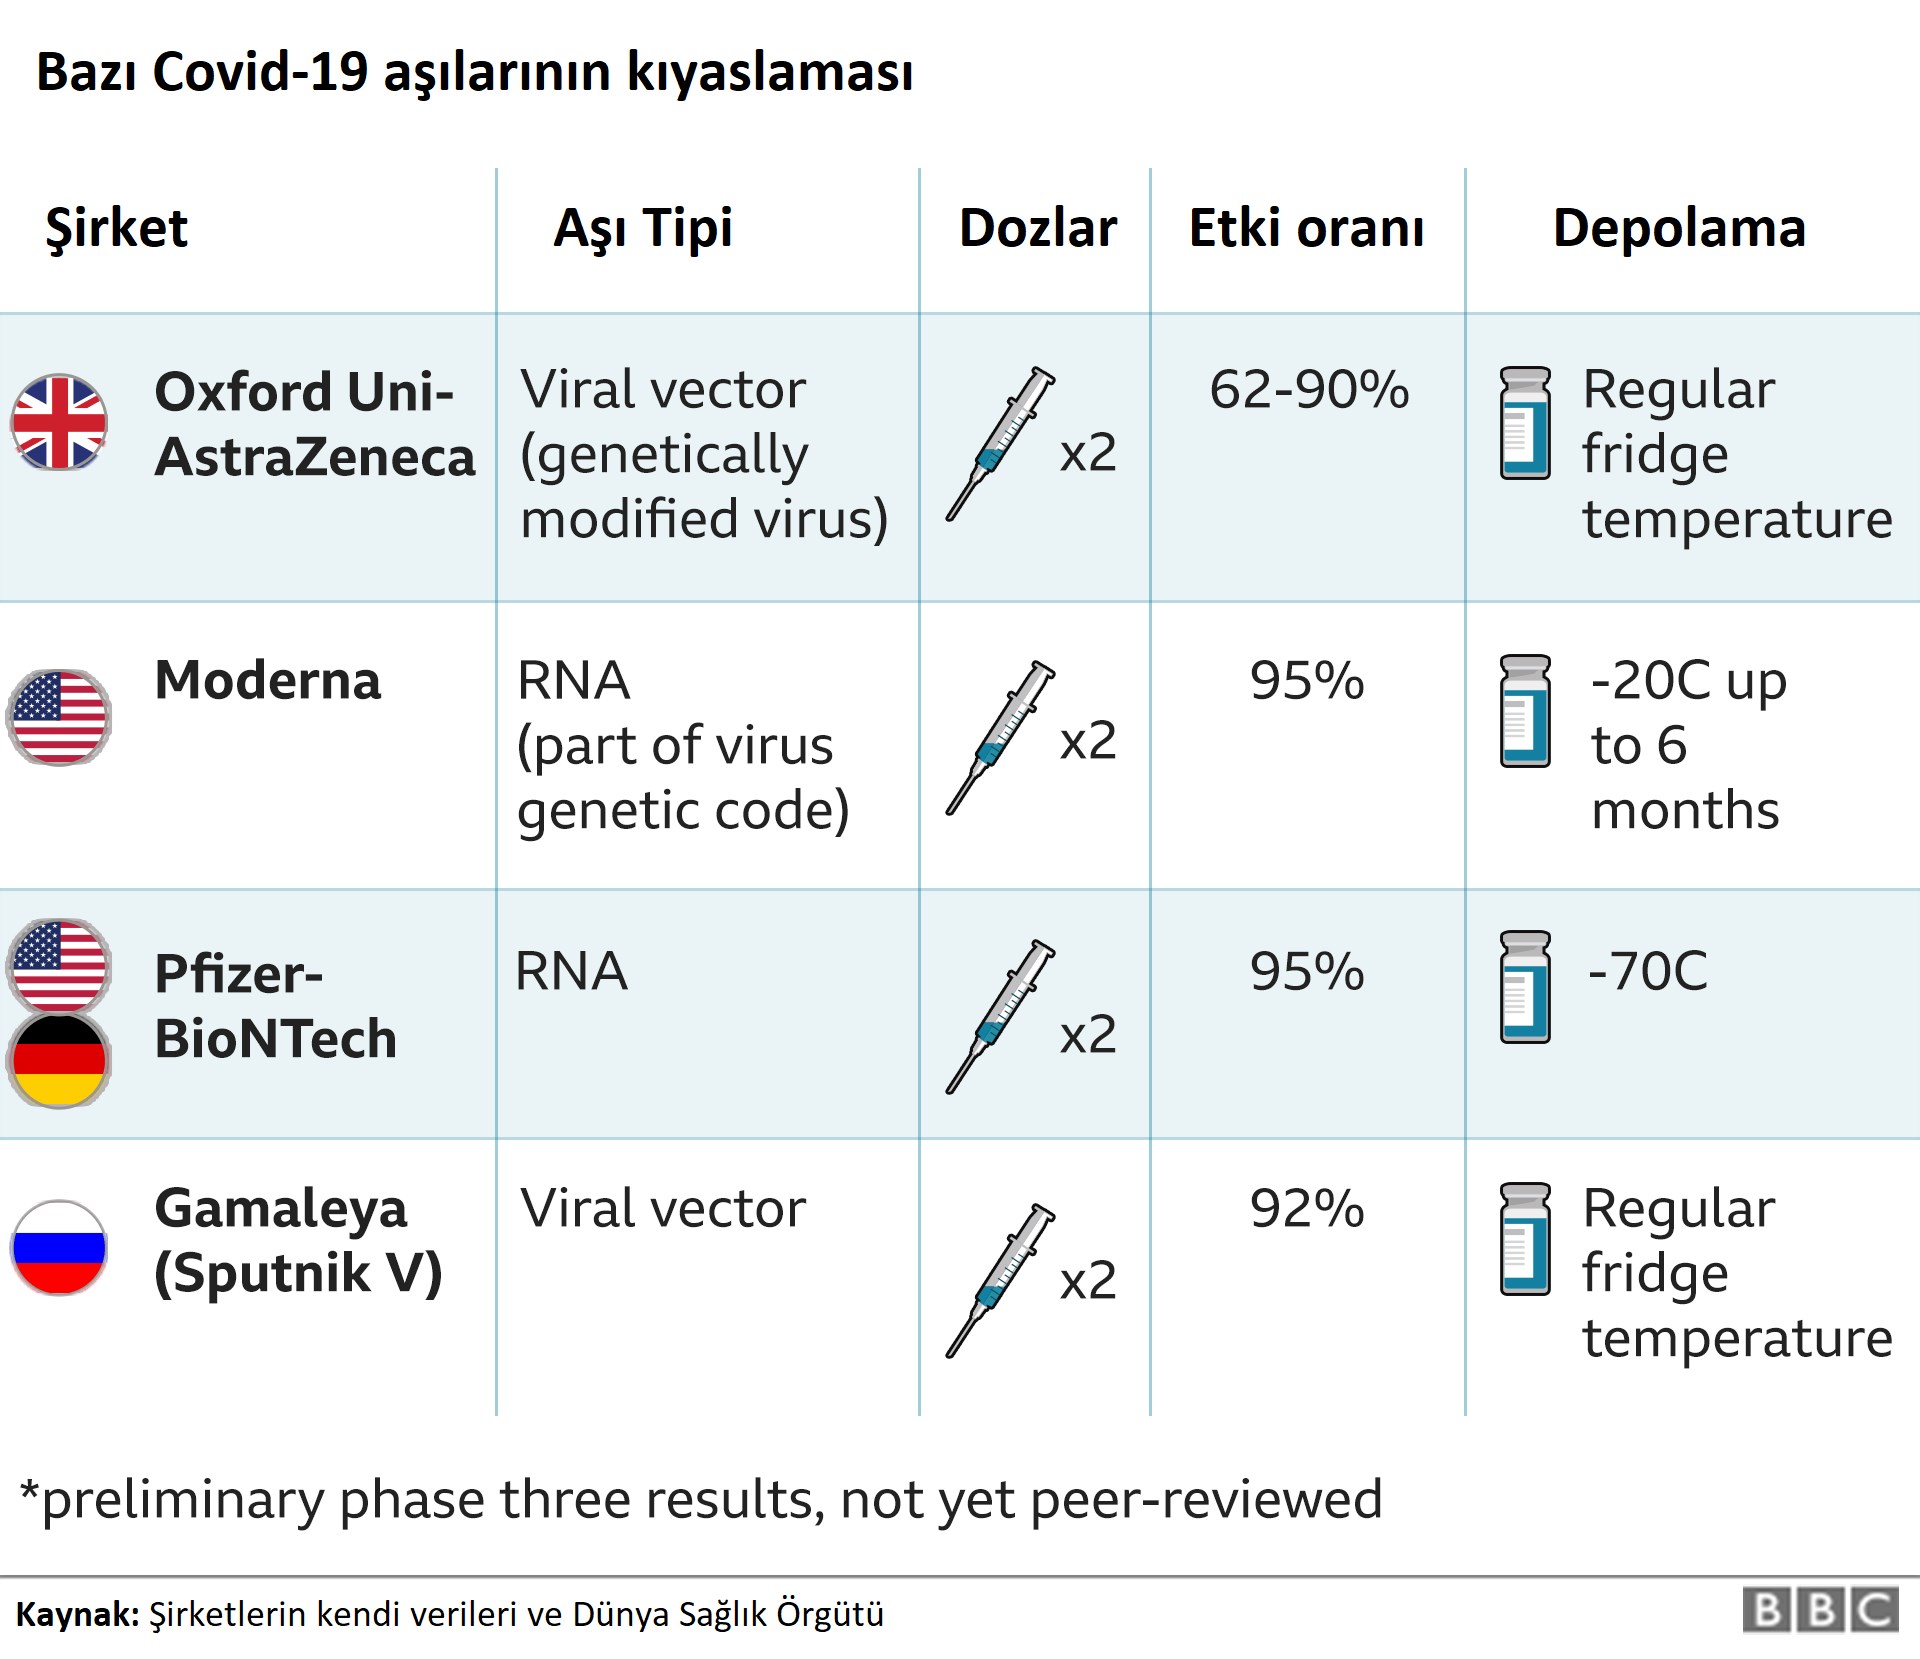 Ucuz ama pek etkili değil: Oxford Üniversitesi'nin Covid-19 aşısı %70 koruma sağlıyor